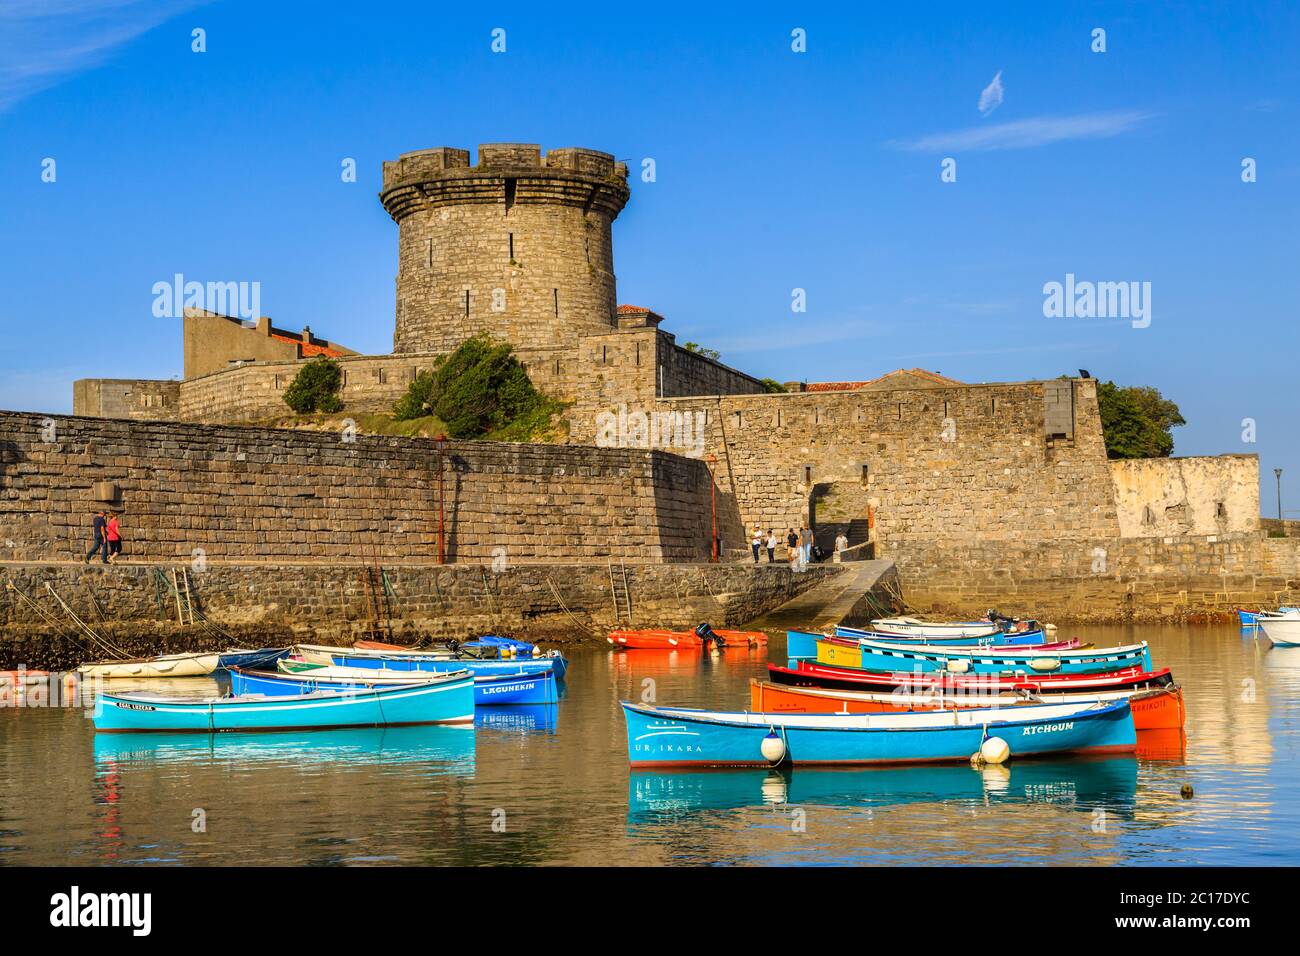 Ciboure, France - 26 septembre 2016 : port de pêche de Ciboure, pays basque. Petits bateaux à poissons colorés sur le vieux port du c Banque D'Images